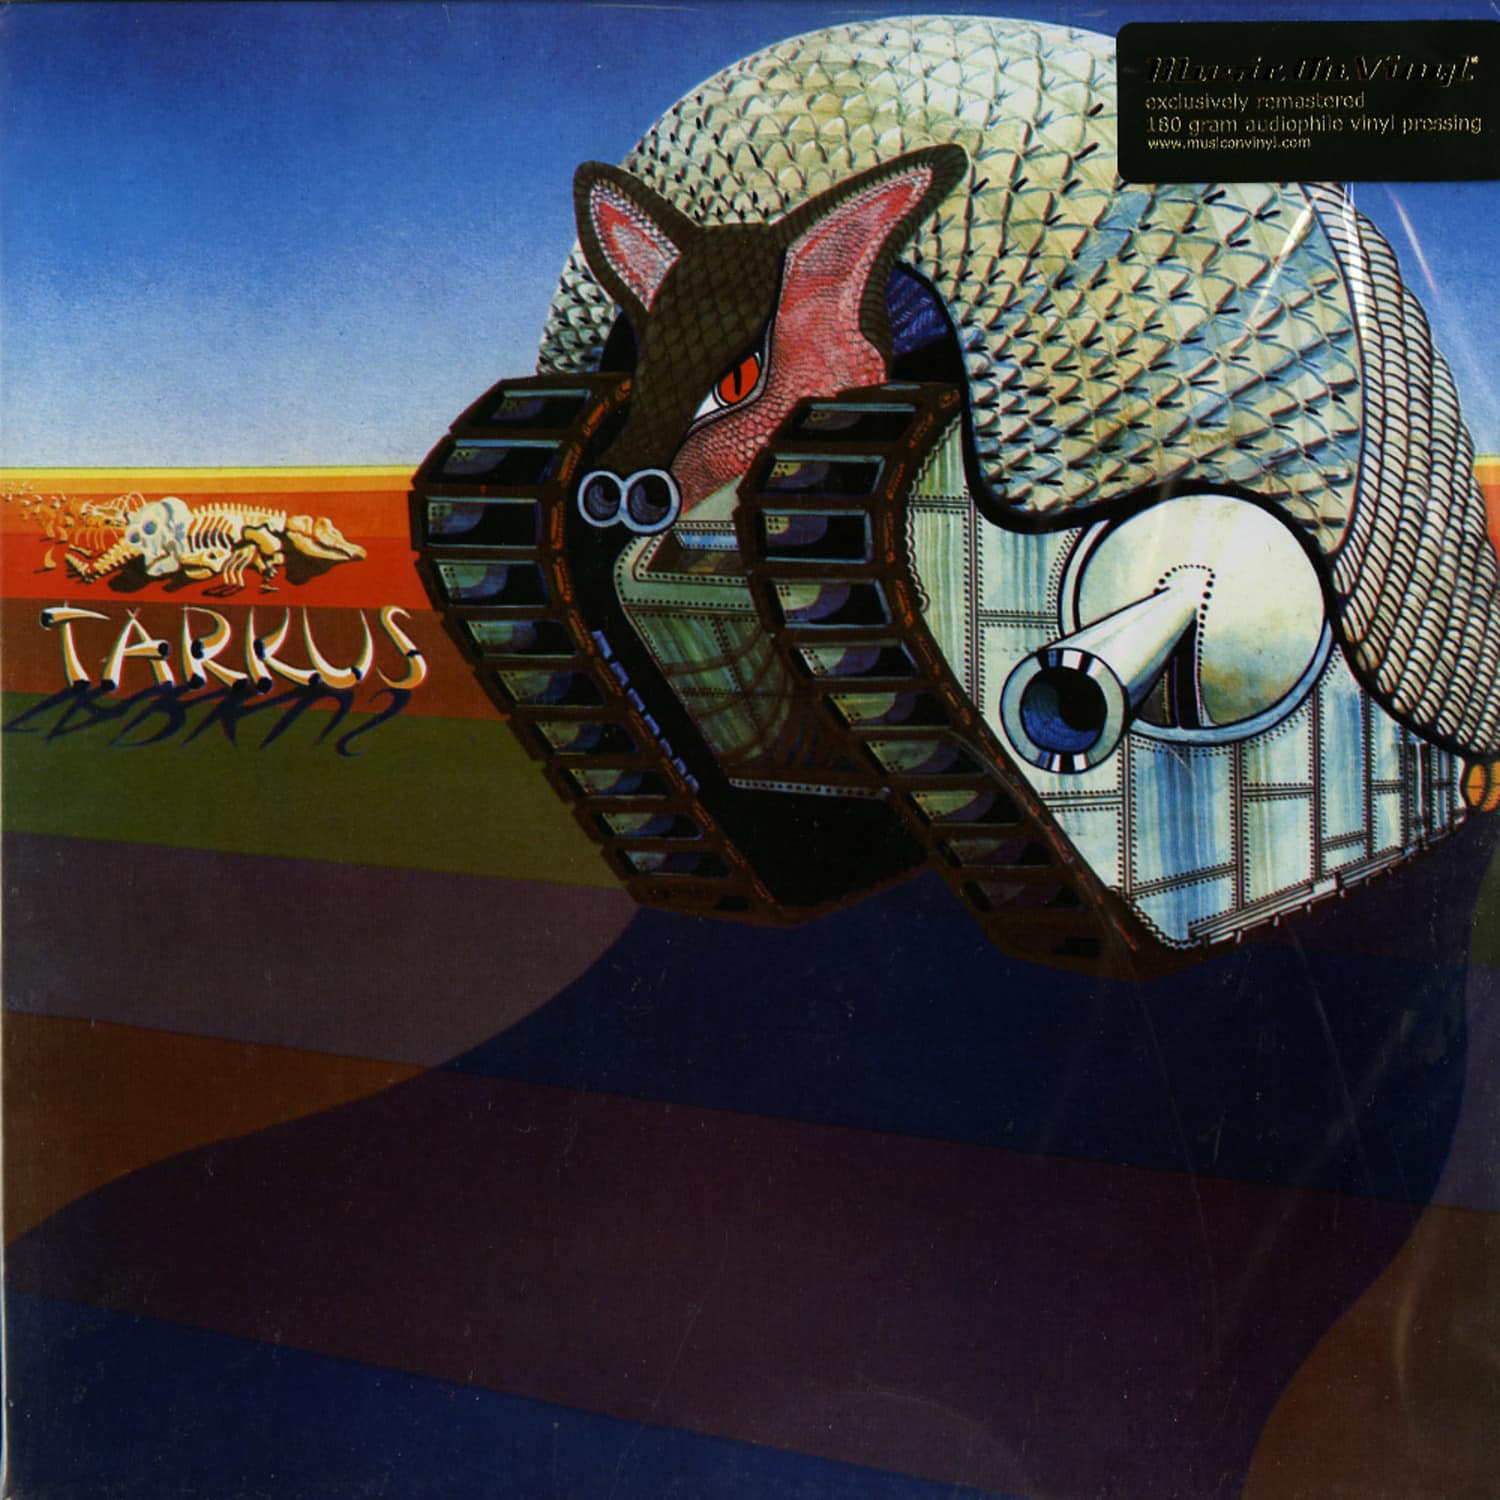 Emerson Lake & Palmer - TARKUS 